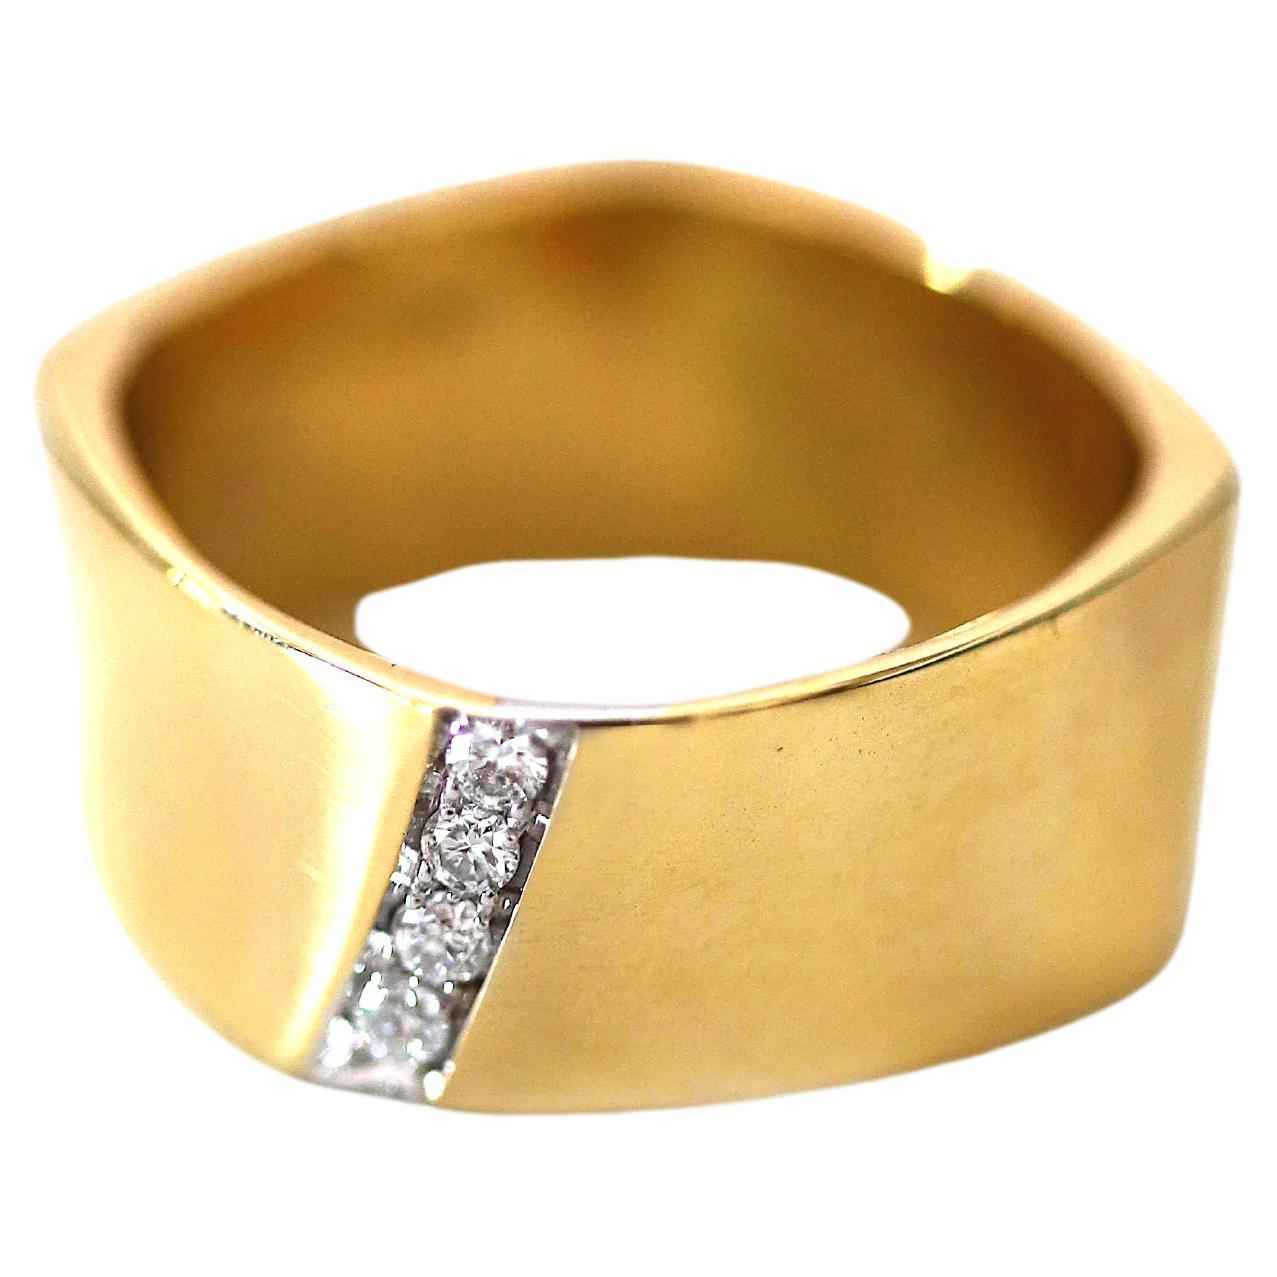 Zigarrenband 0,08 Karat Weiße Diamanten 18 Karat Gelbgold Design Ring